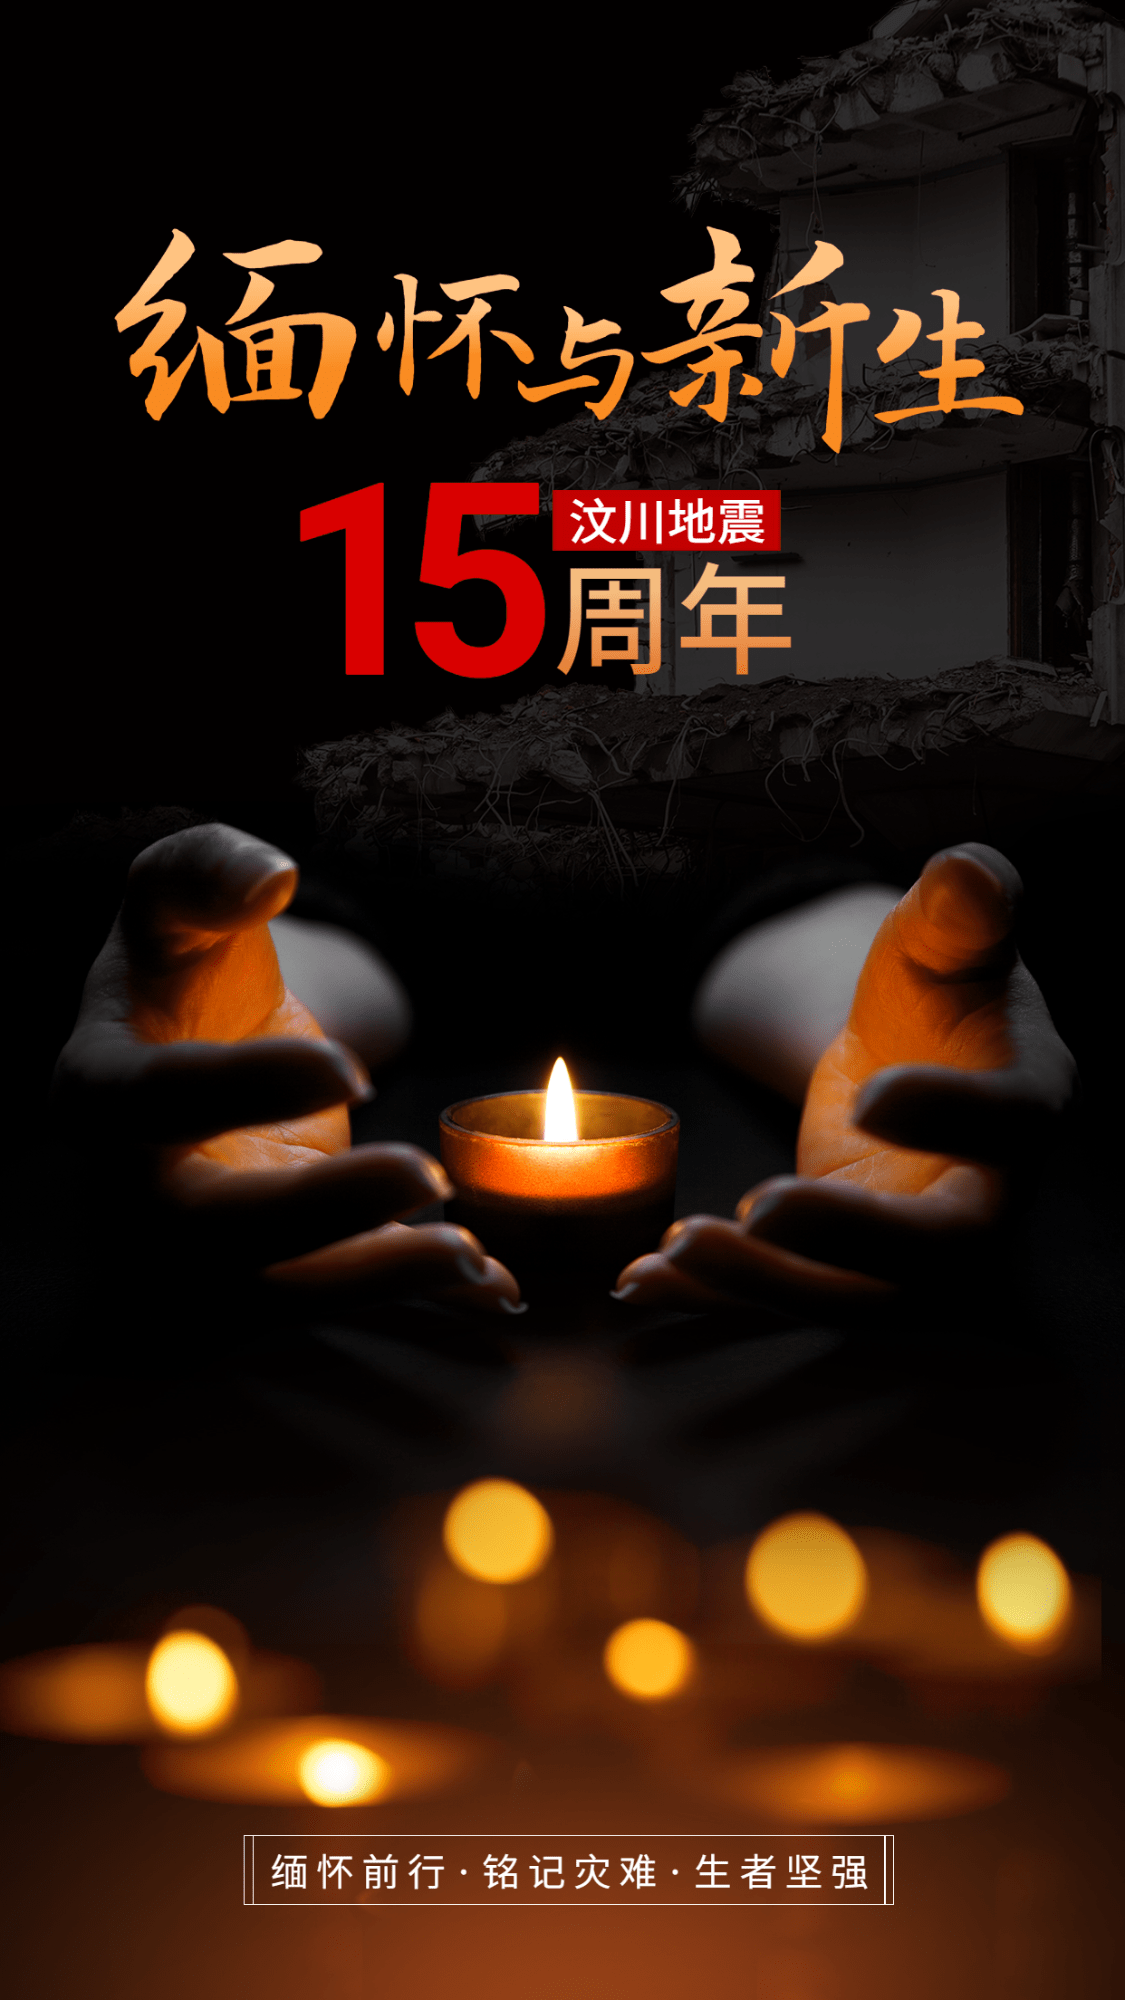 512汶川地震纪念日手机海报